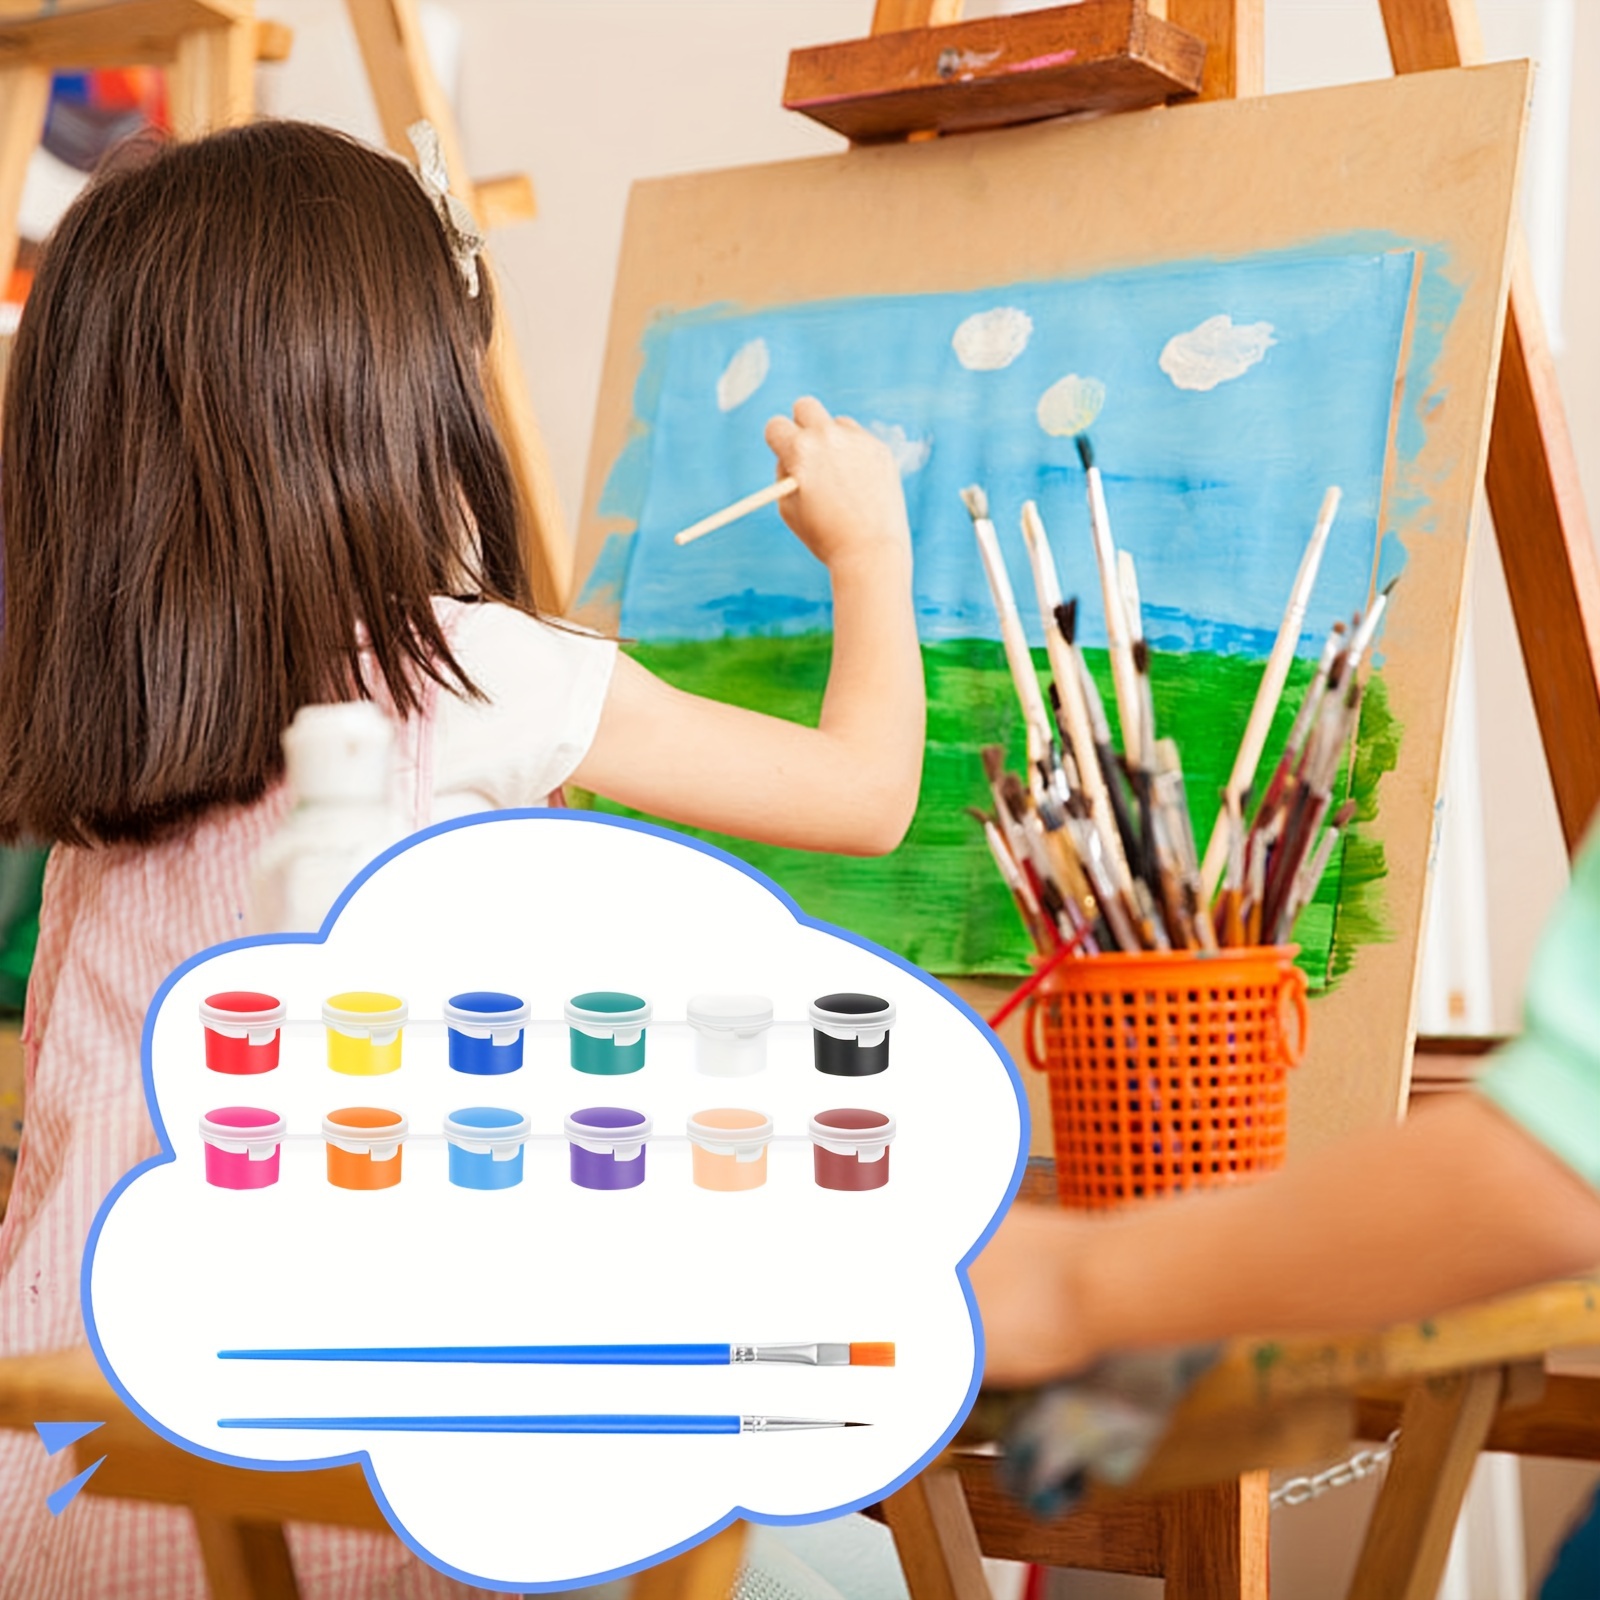  Pintura de dedos para niños pequeños, no tóxica, lavable,  pintura de dedos para niños pequeños de 1 a 3, 6 colores brillantes, pintura  para manualidades, pintura, suministros de pintura escolar, 